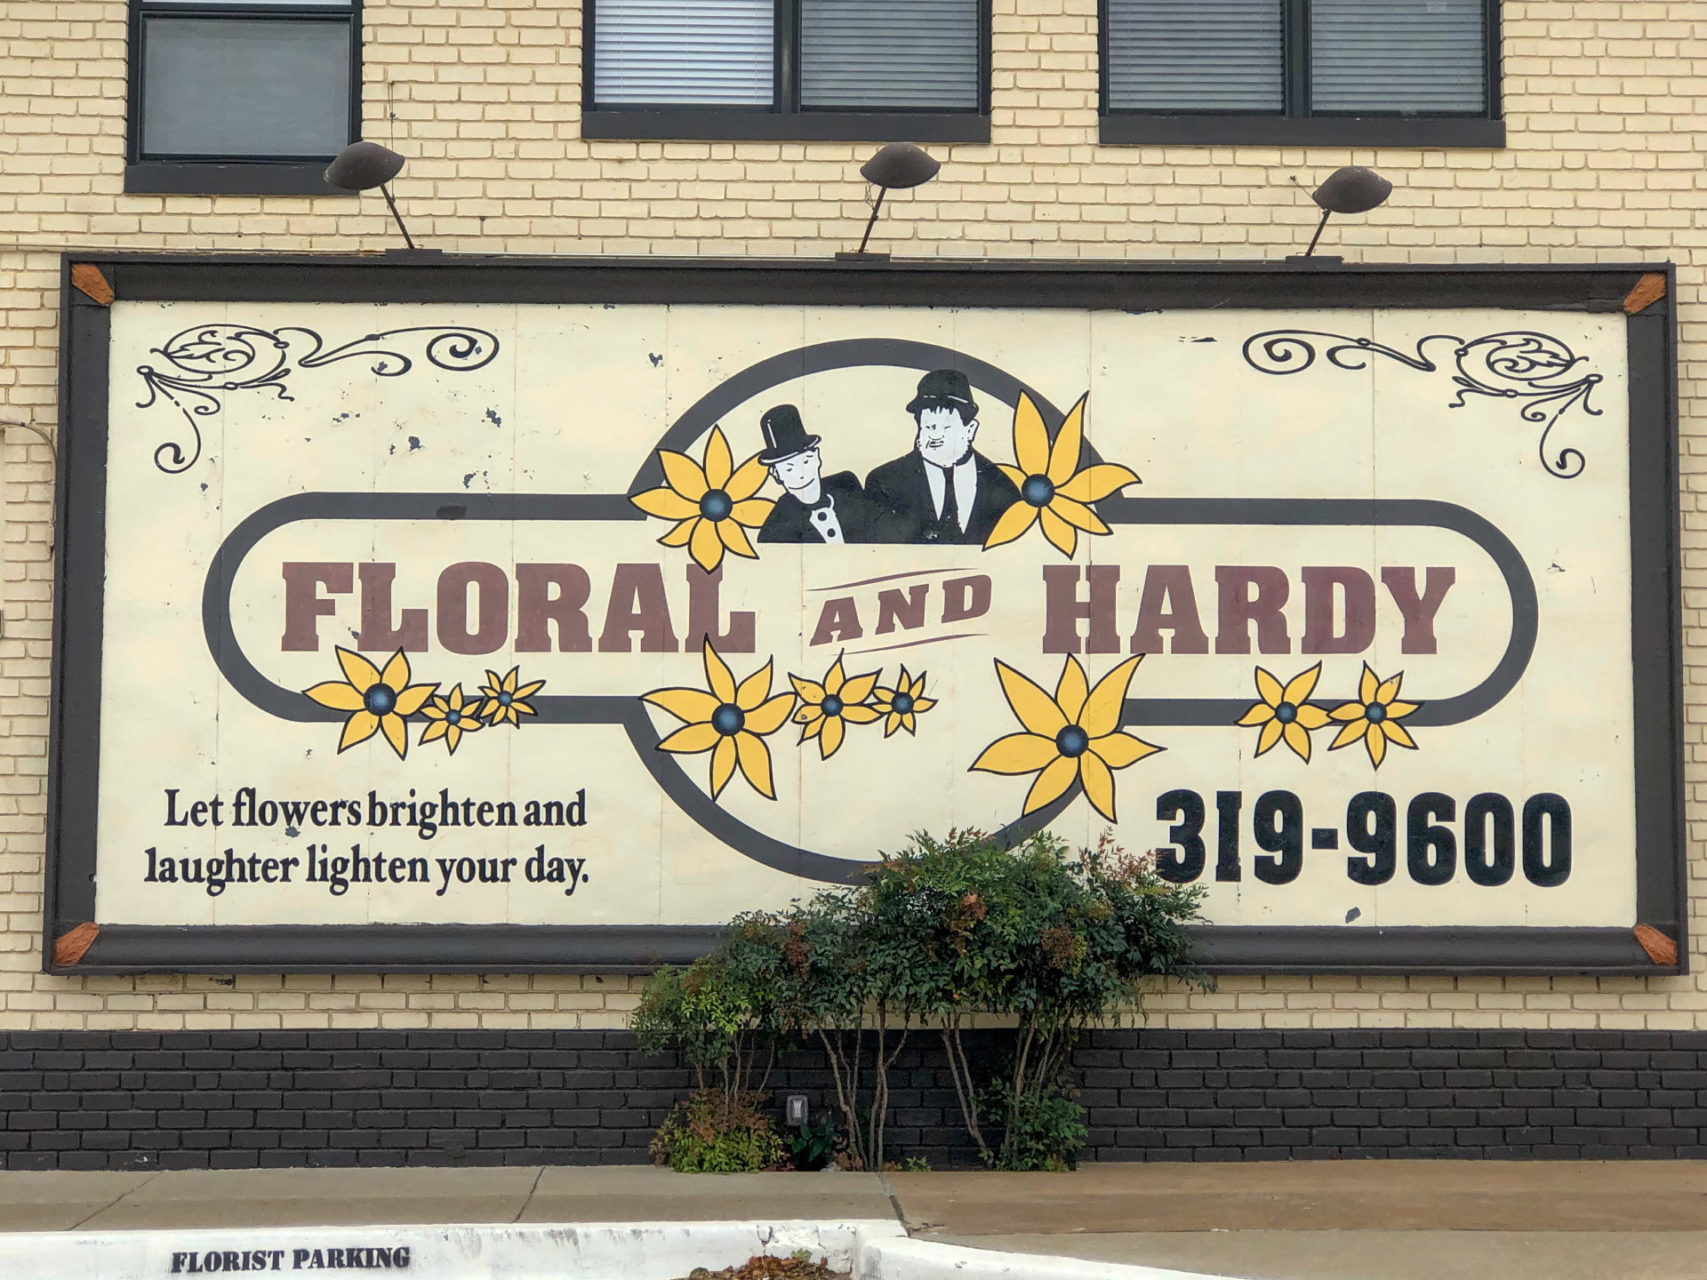 Werbung in Bricktown in Oklahoma City für das Blumengeschäft Floral and Hardy